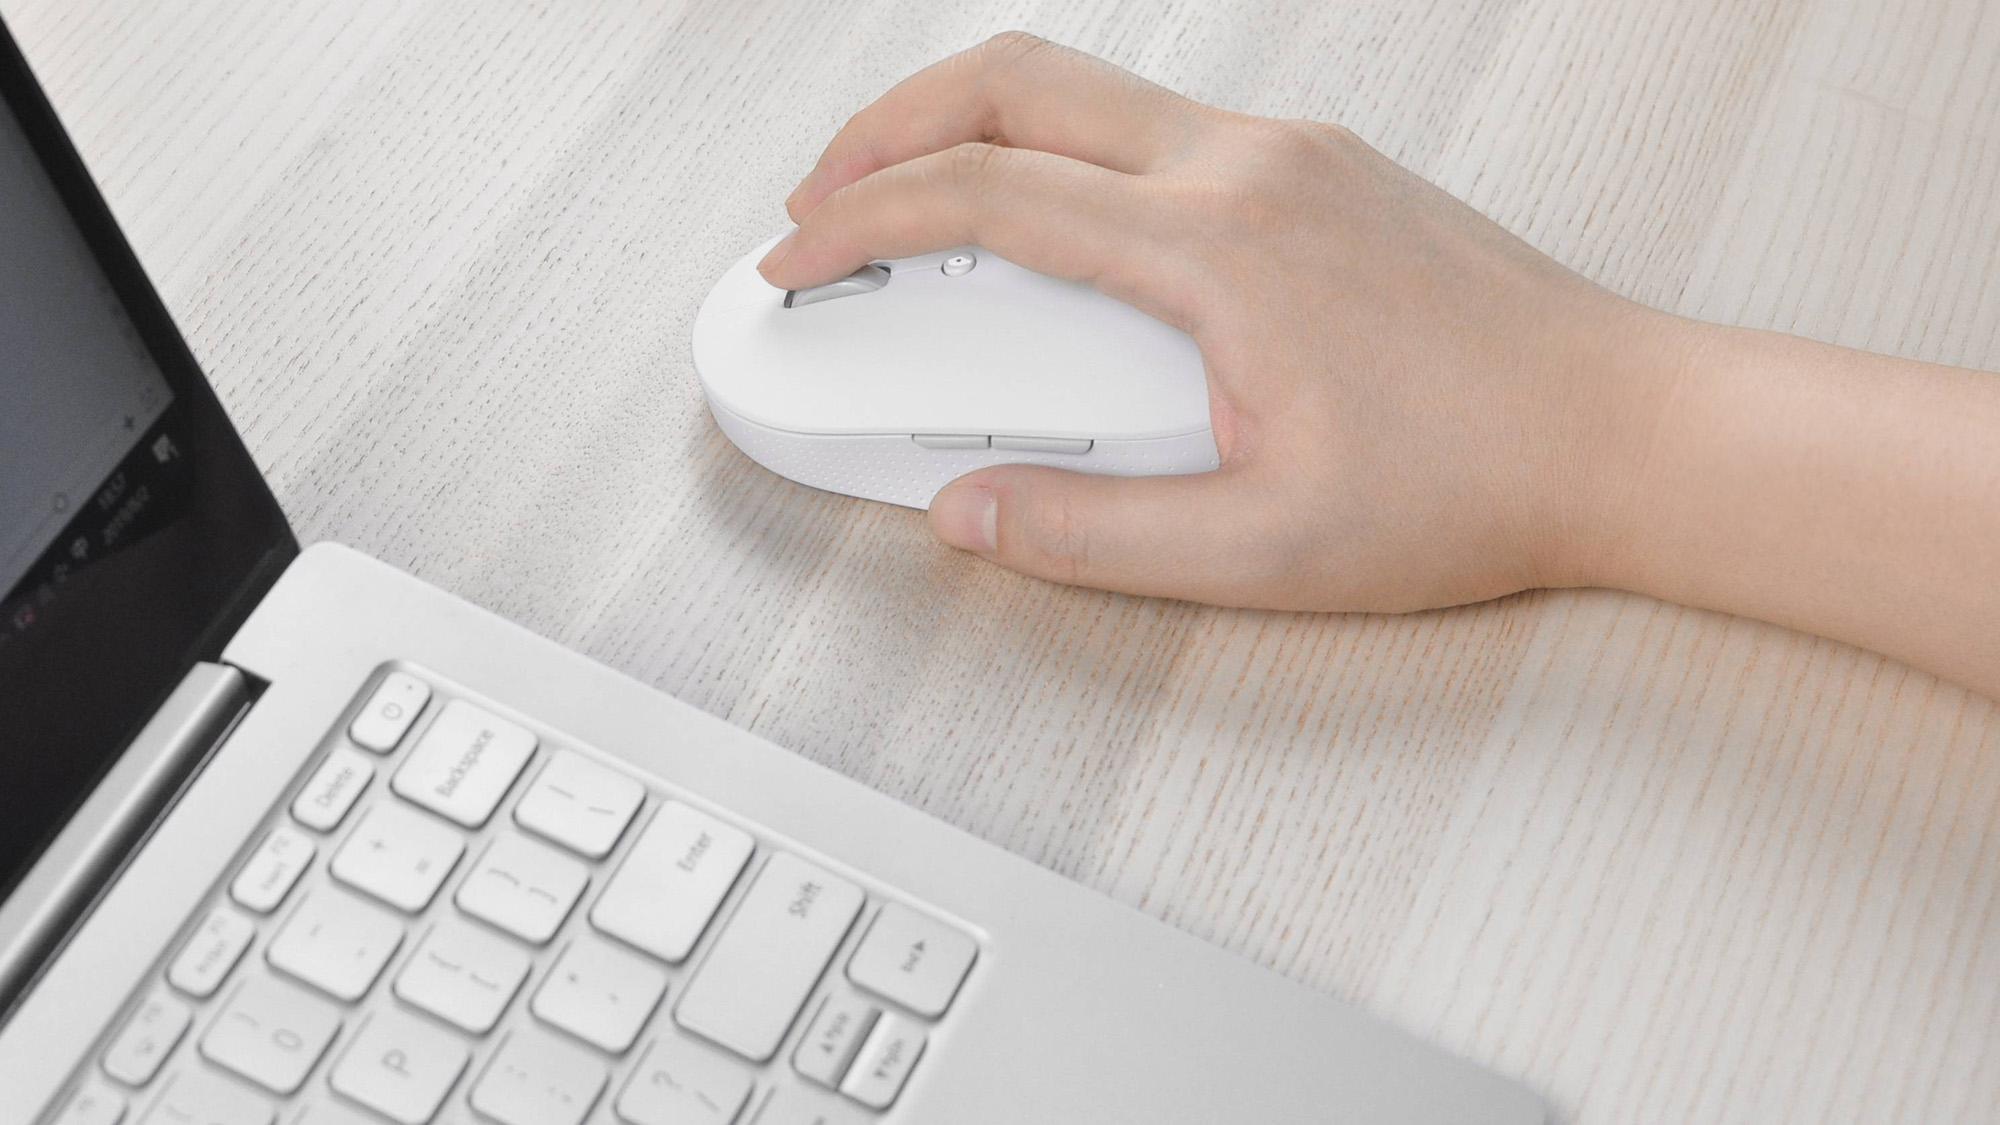 Mysz bezprzewodowa Xiaomi Mi Dual Mode Wireless Mouse biały